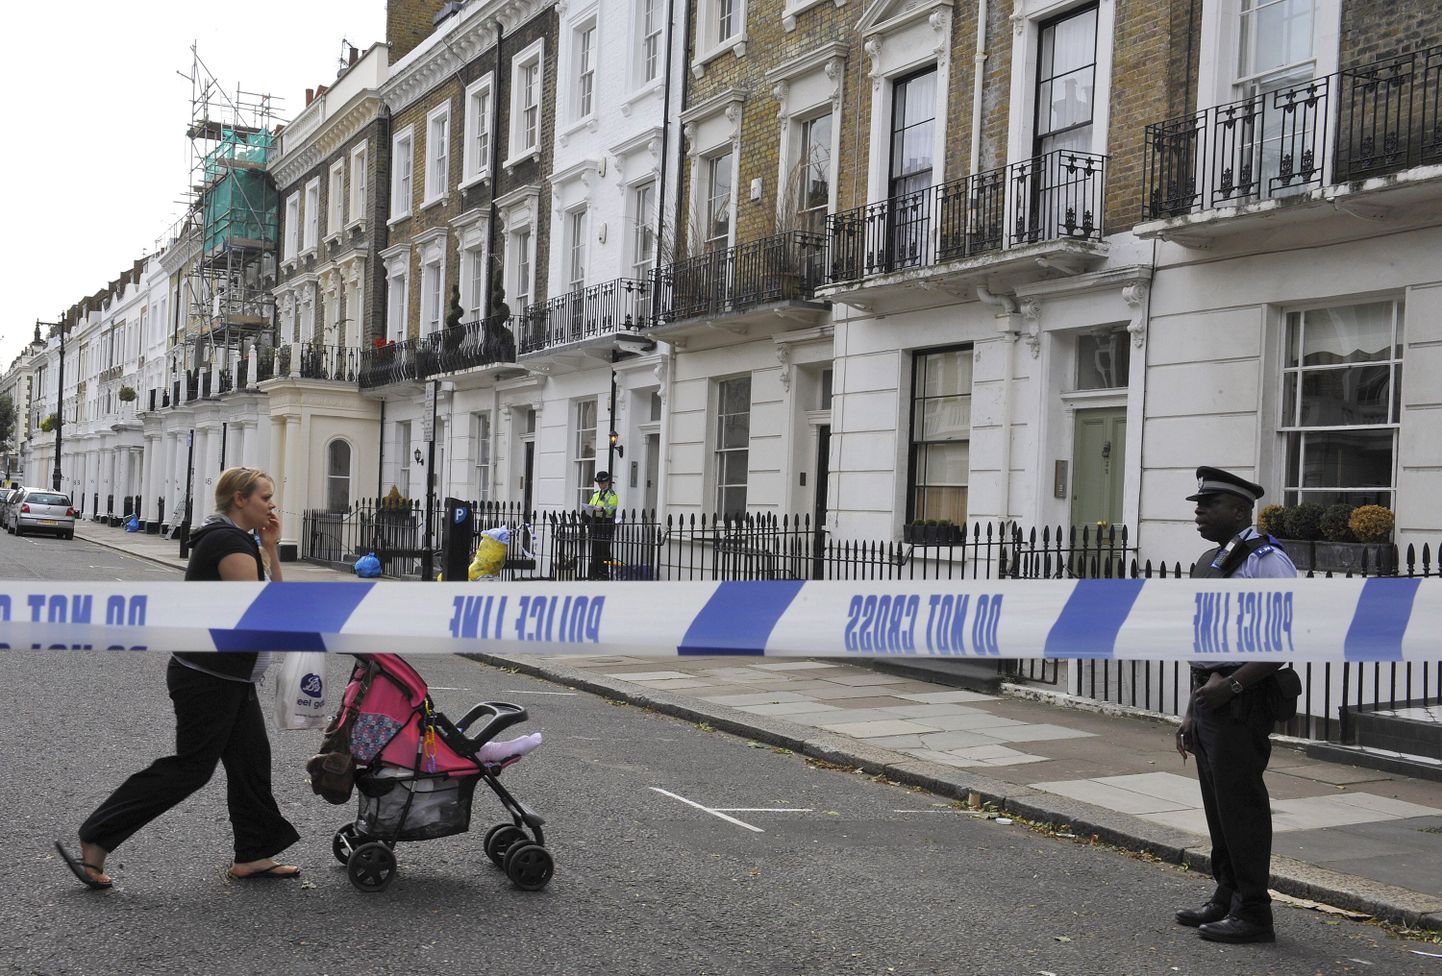 Briti politsei Londonis Pimlico linnaosas, kus ühest korterist leiti oletatavasti Briti luureagendi surnukeha.